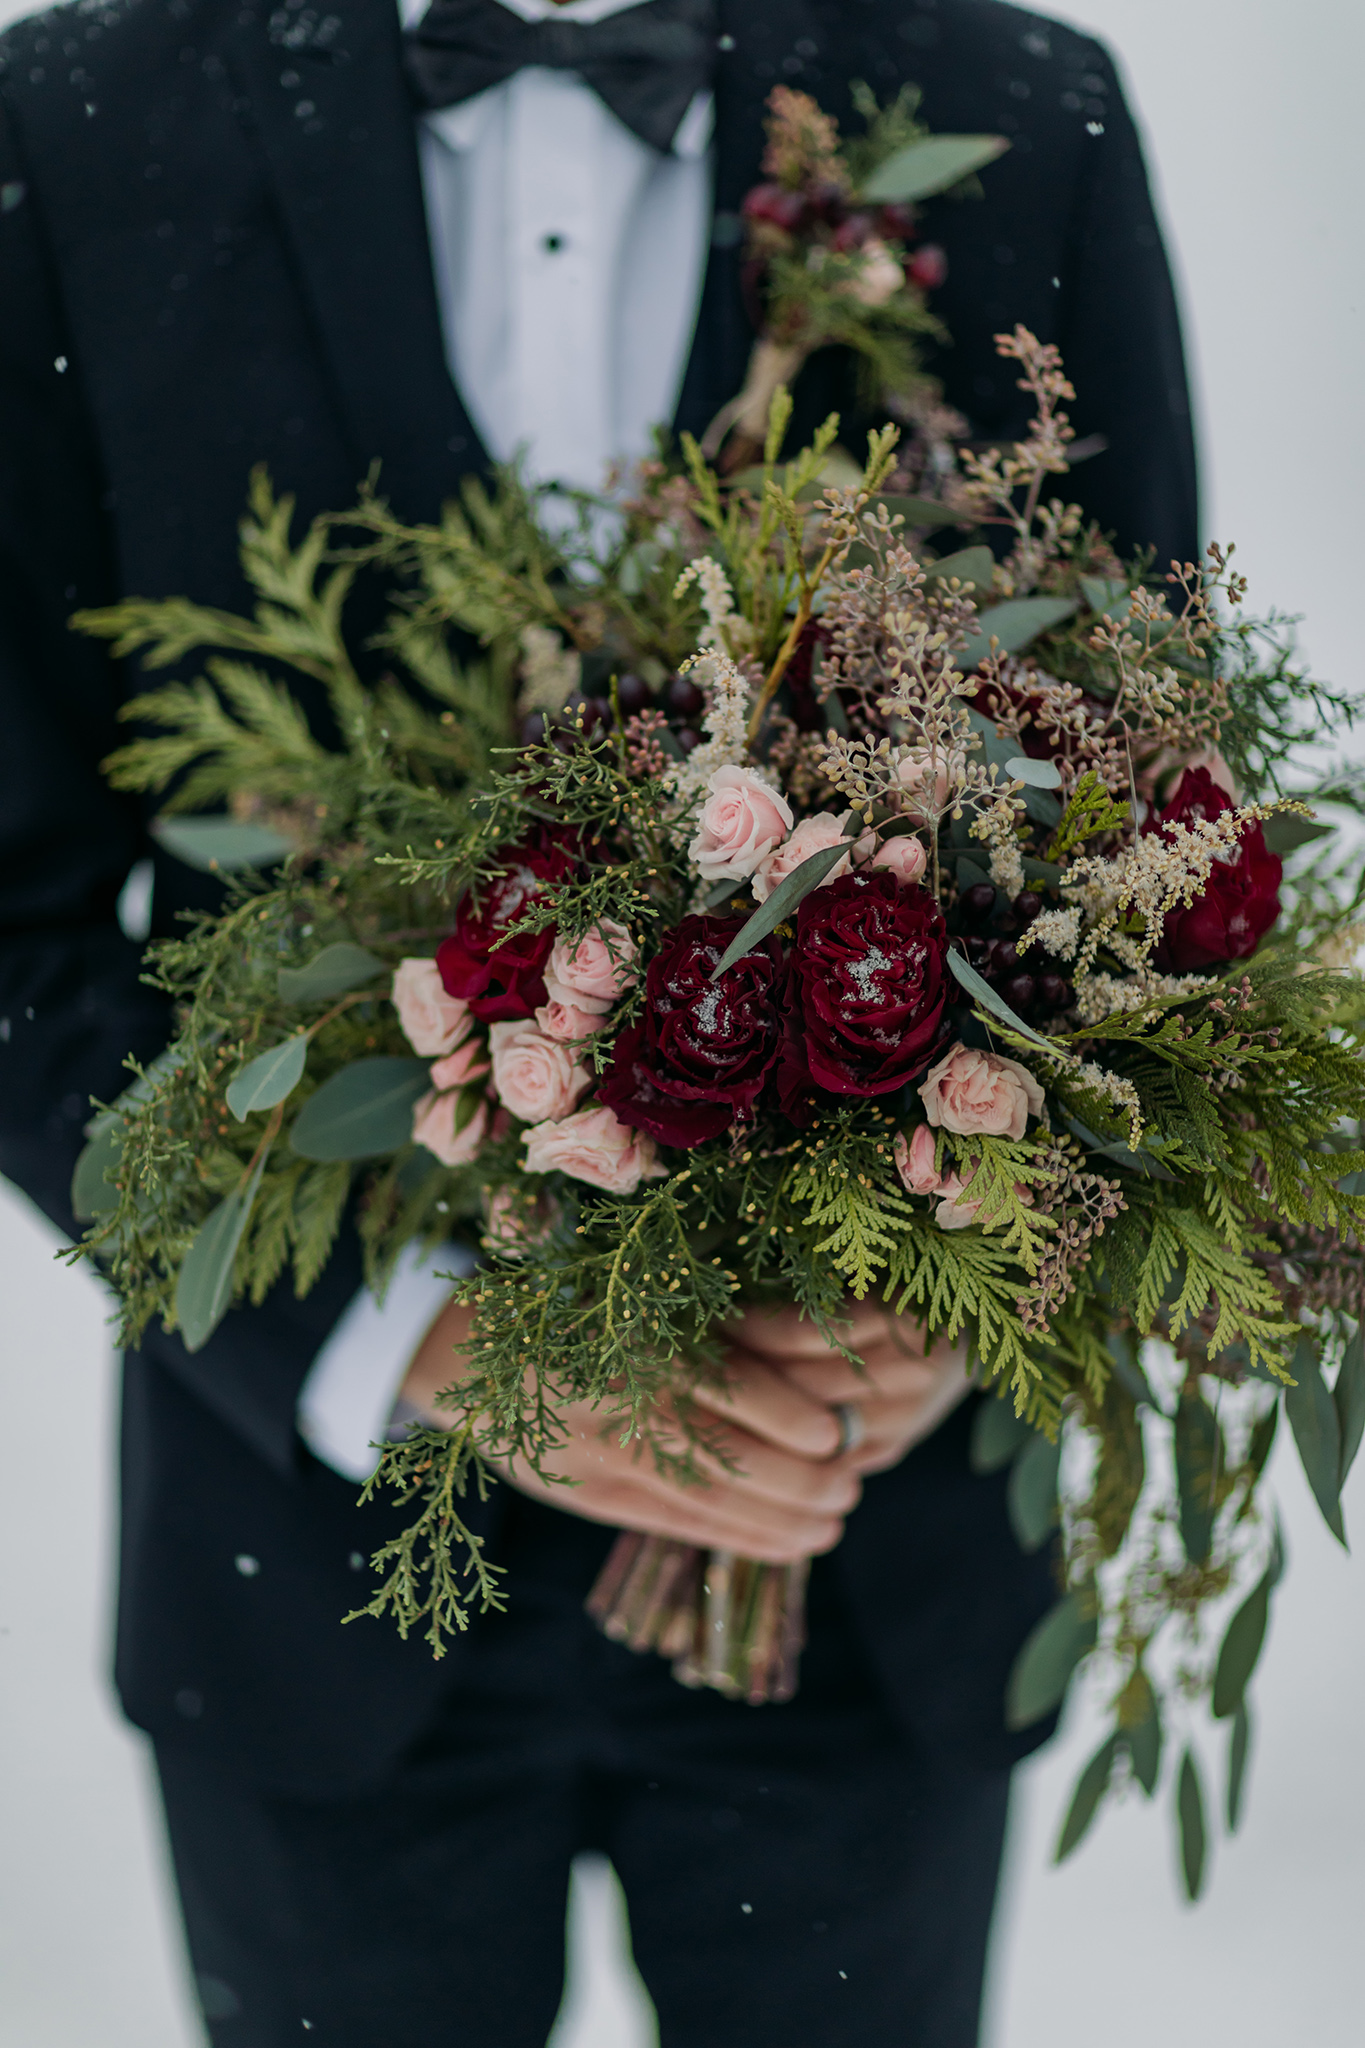 wild unstrucutured winter wedding bouquet for mountain wedding in blush, pink, burgundy & greenery